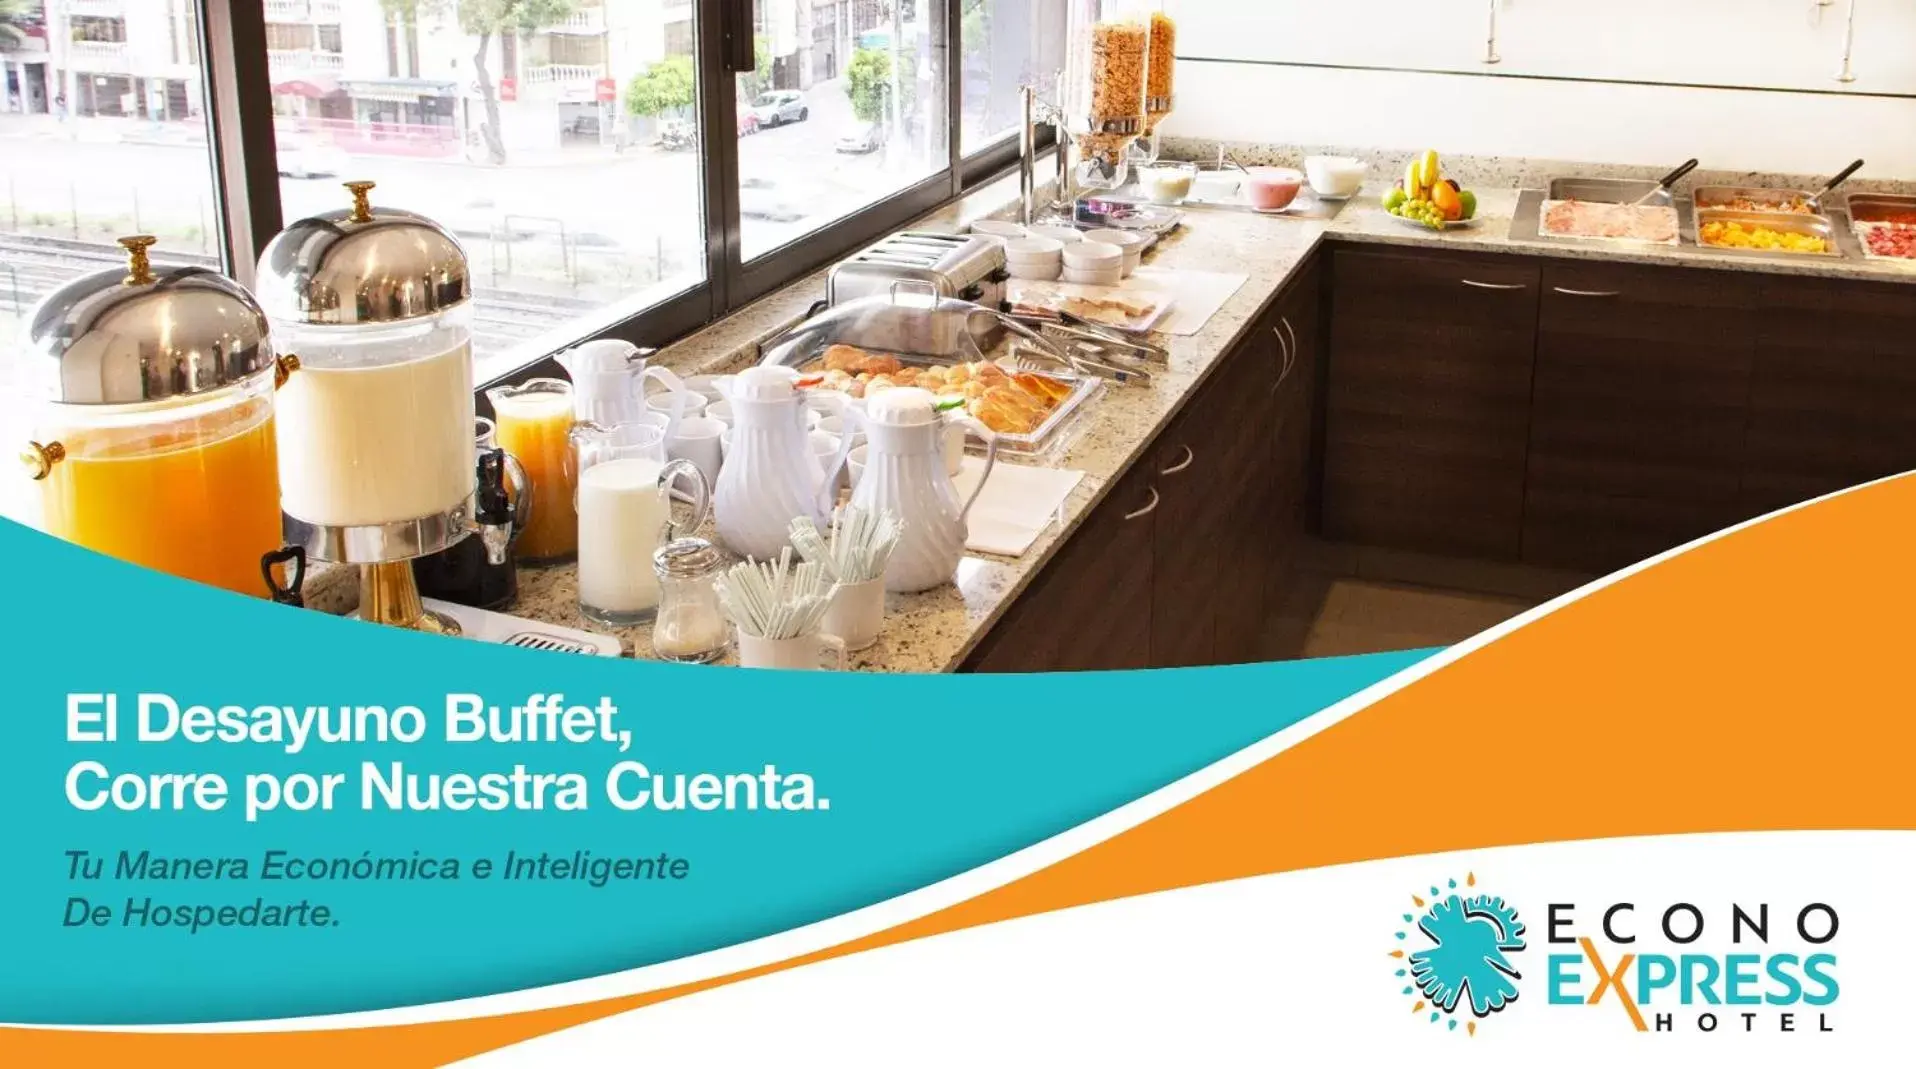 Buffet breakfast in Econo Express Hotel